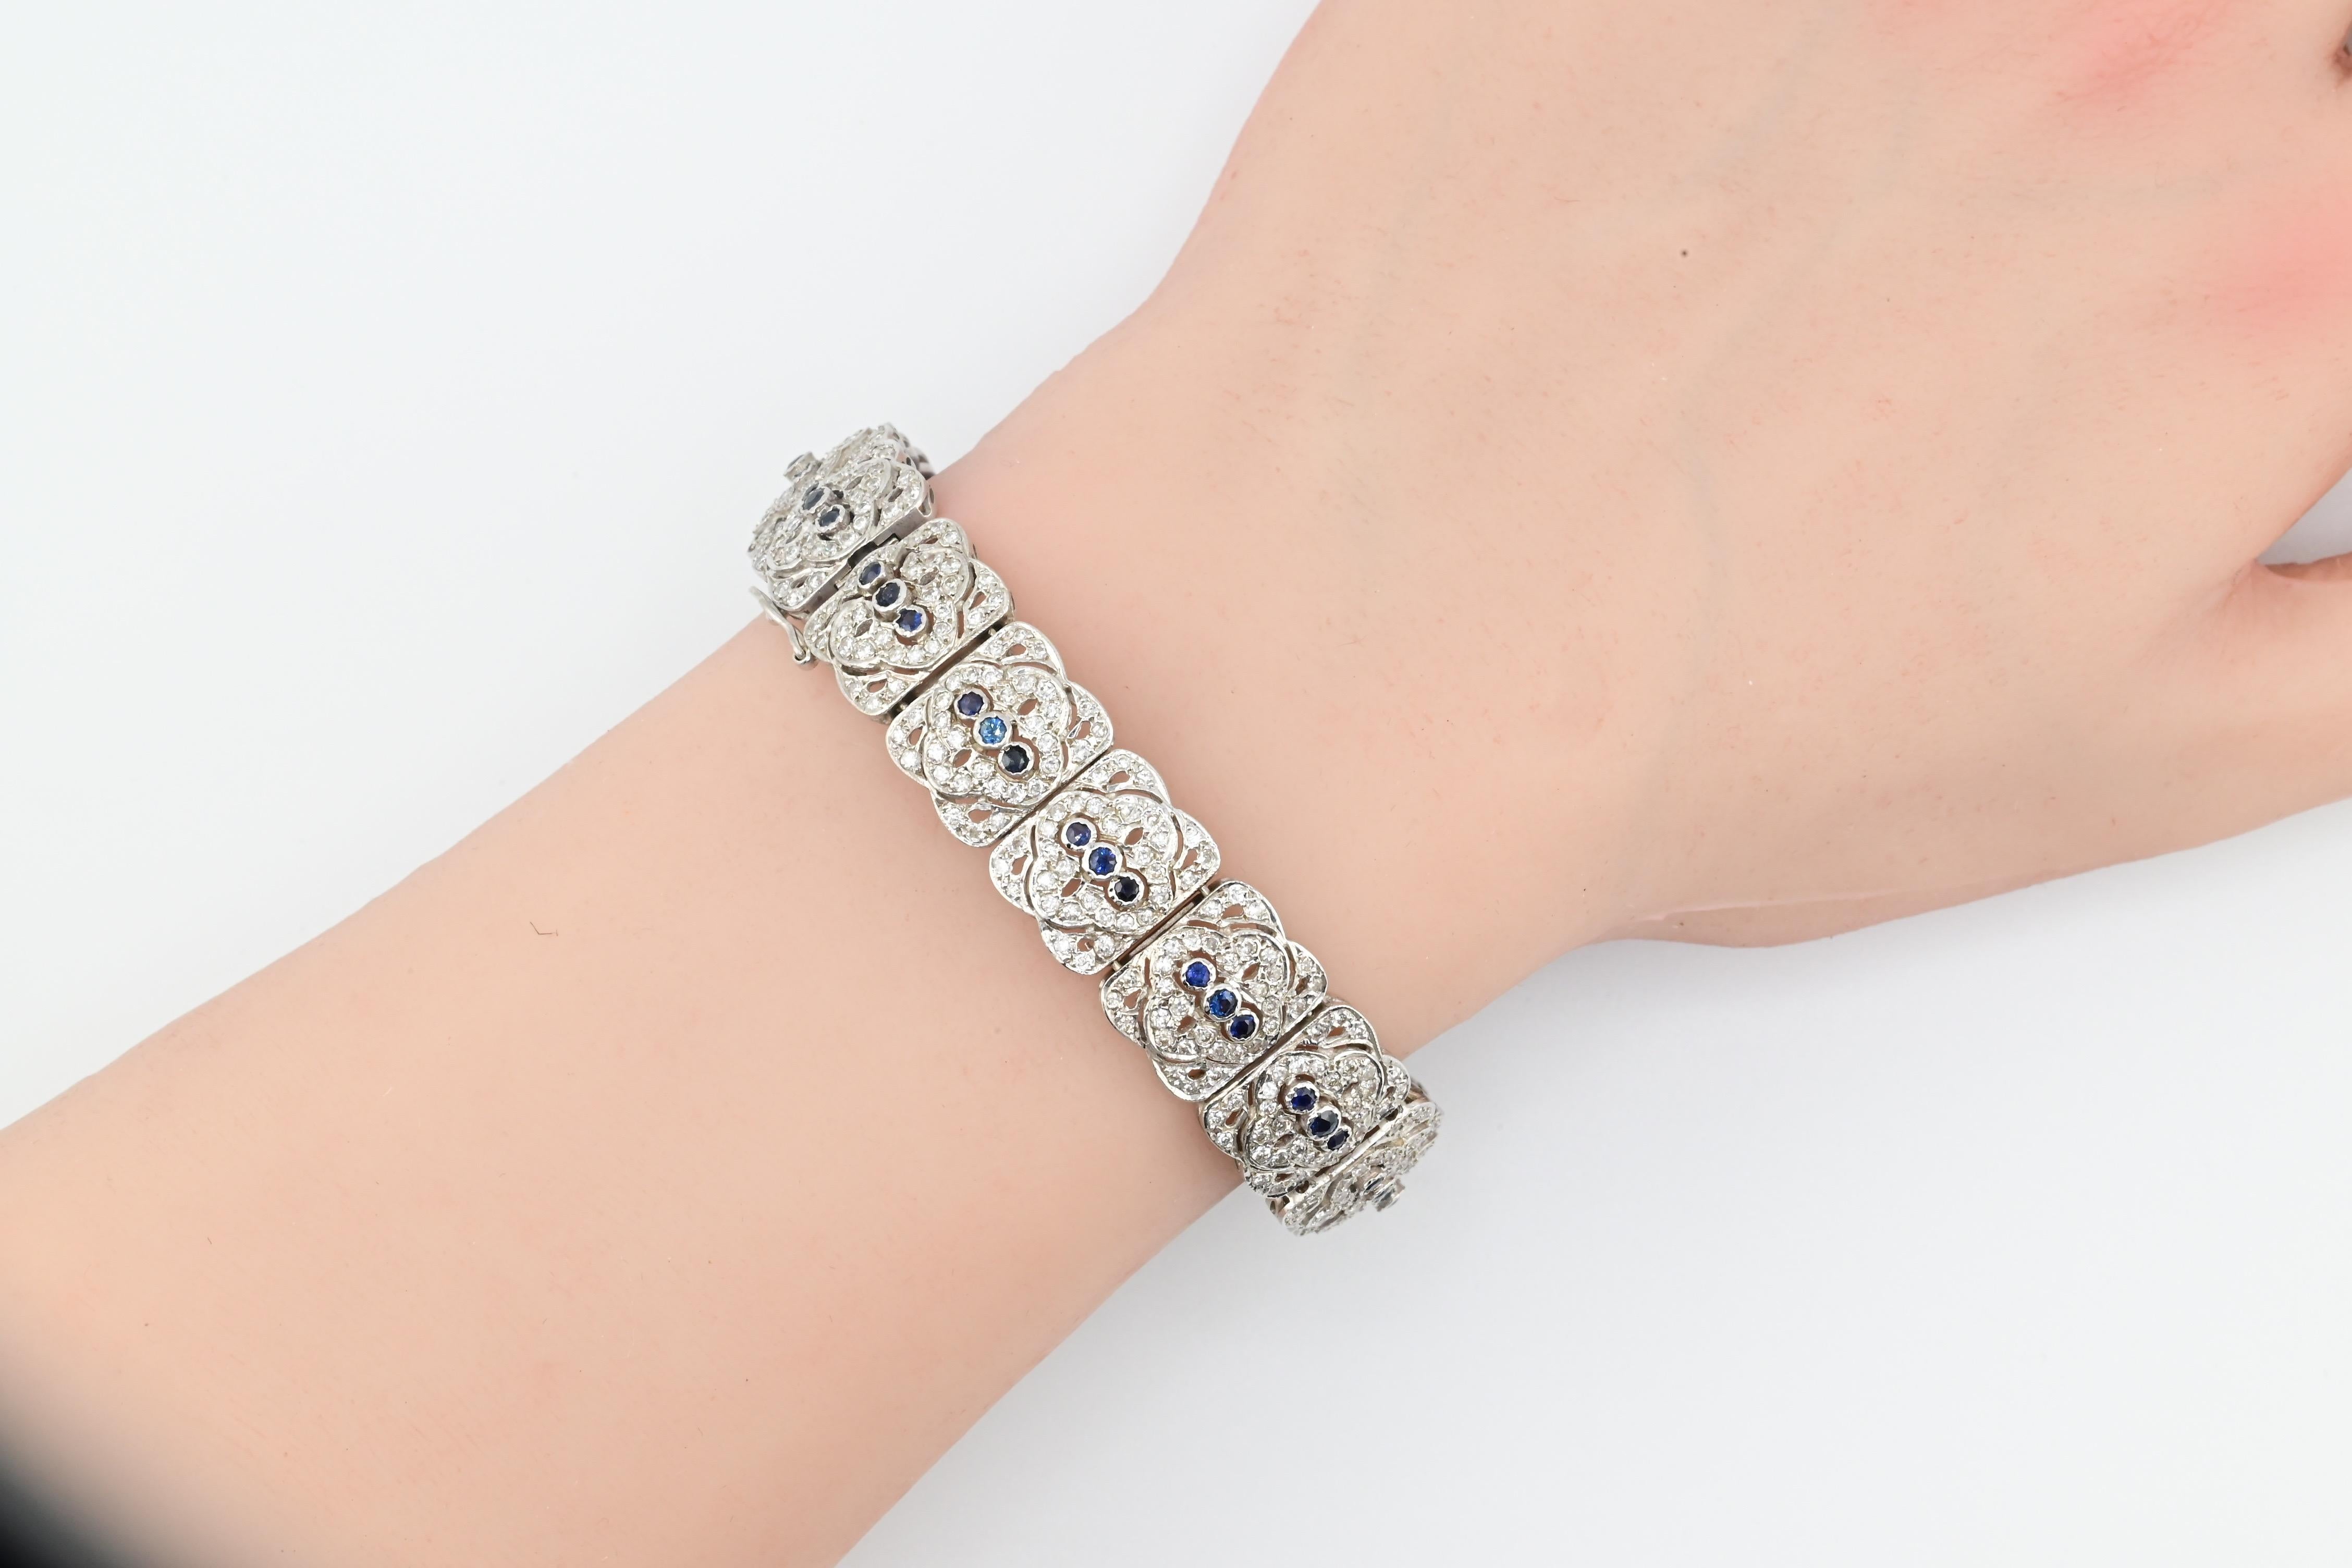 Ce superbe bracelet de style Art déco est une pièce de joaillerie intemporelle qui ajoutera du glamour à toute collection. Fabriqué en or blanc 18 carats, il présente un total de 4,92 carats de diamants étincelants, ce qui en fait une véritable